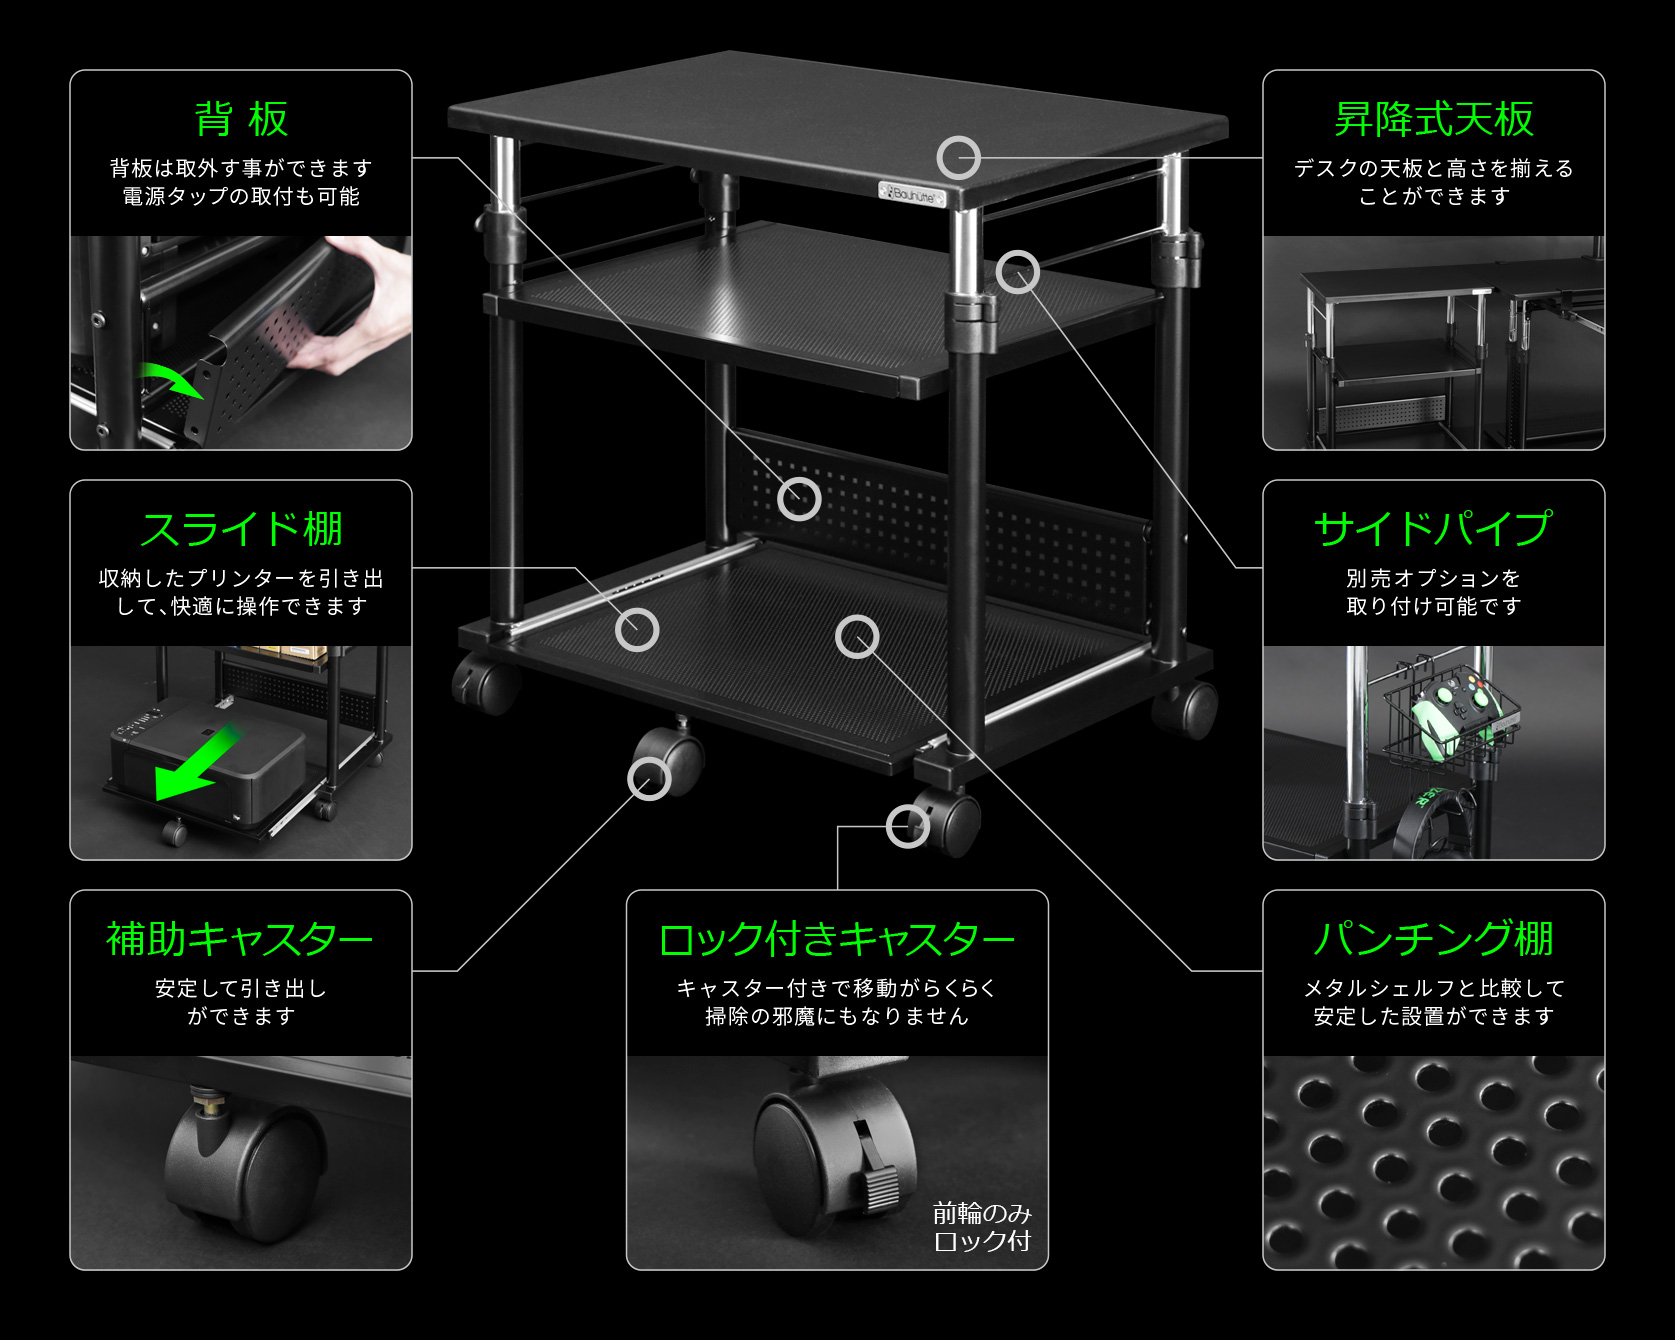 ゲーム機収納のアイデアが満載 収納アイテムと共に見る9の案 Bauhutte